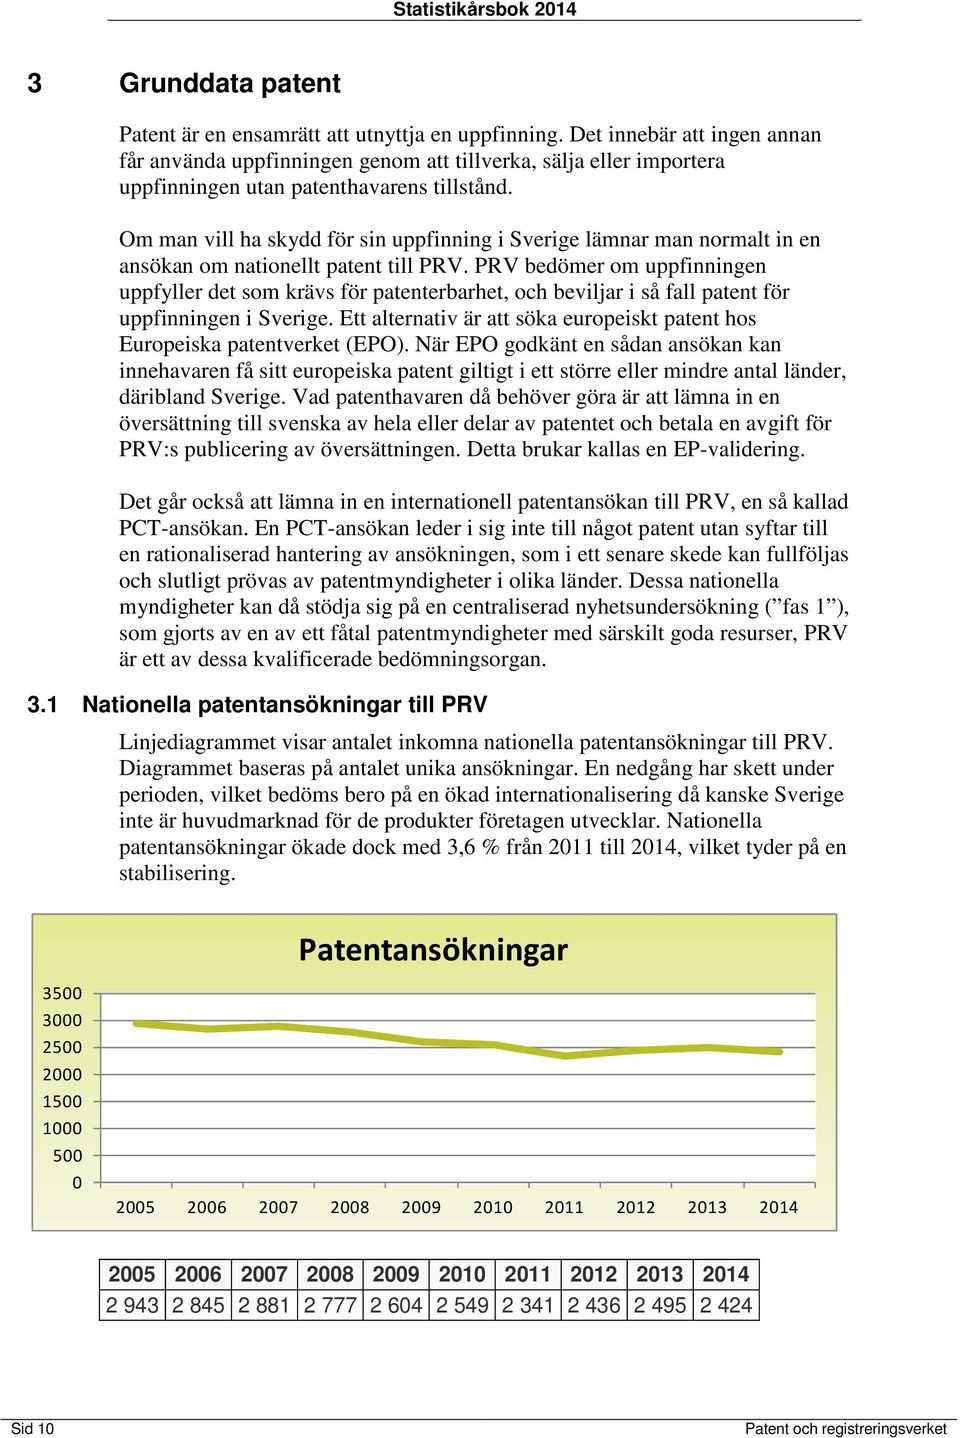 Om man vill ha skydd för sin uppfinning i Sverige lämnar man normalt in en ansökan om nationellt patent till PRV.